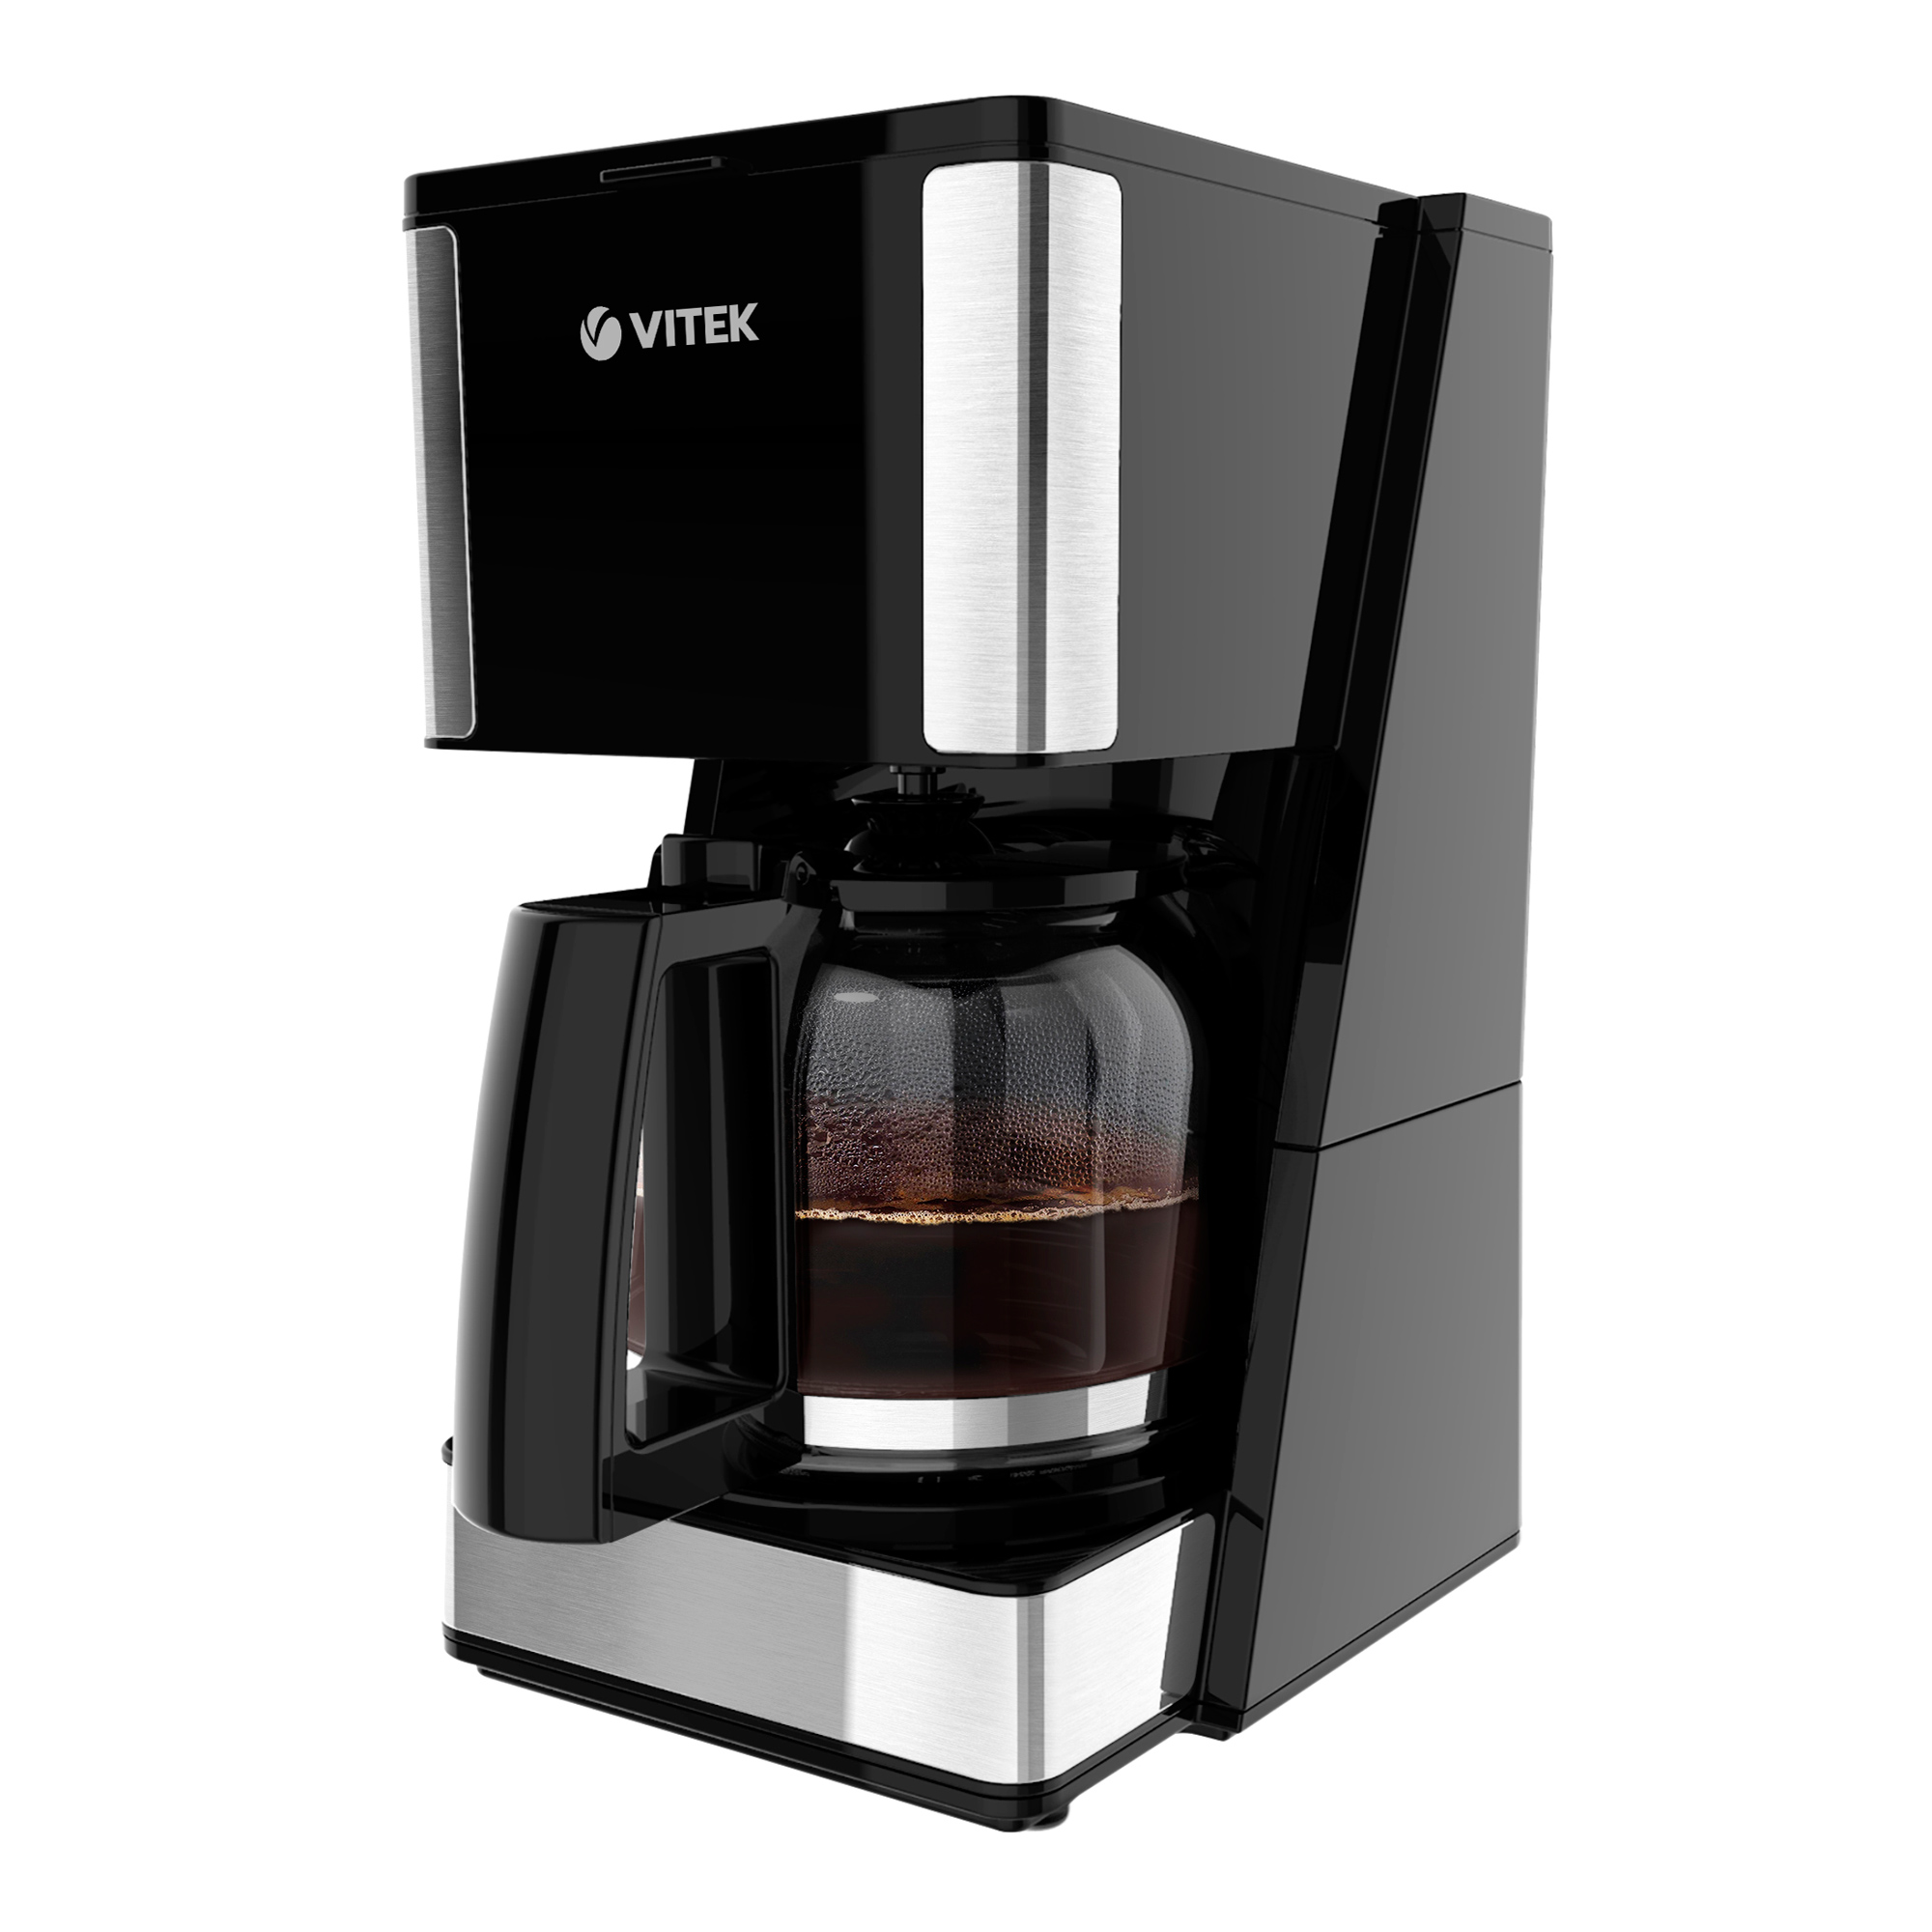 Кофеварка капельного типа VITEK VT-8384 серый, черный кофеварка капельного типа vitek vt 8384 серый